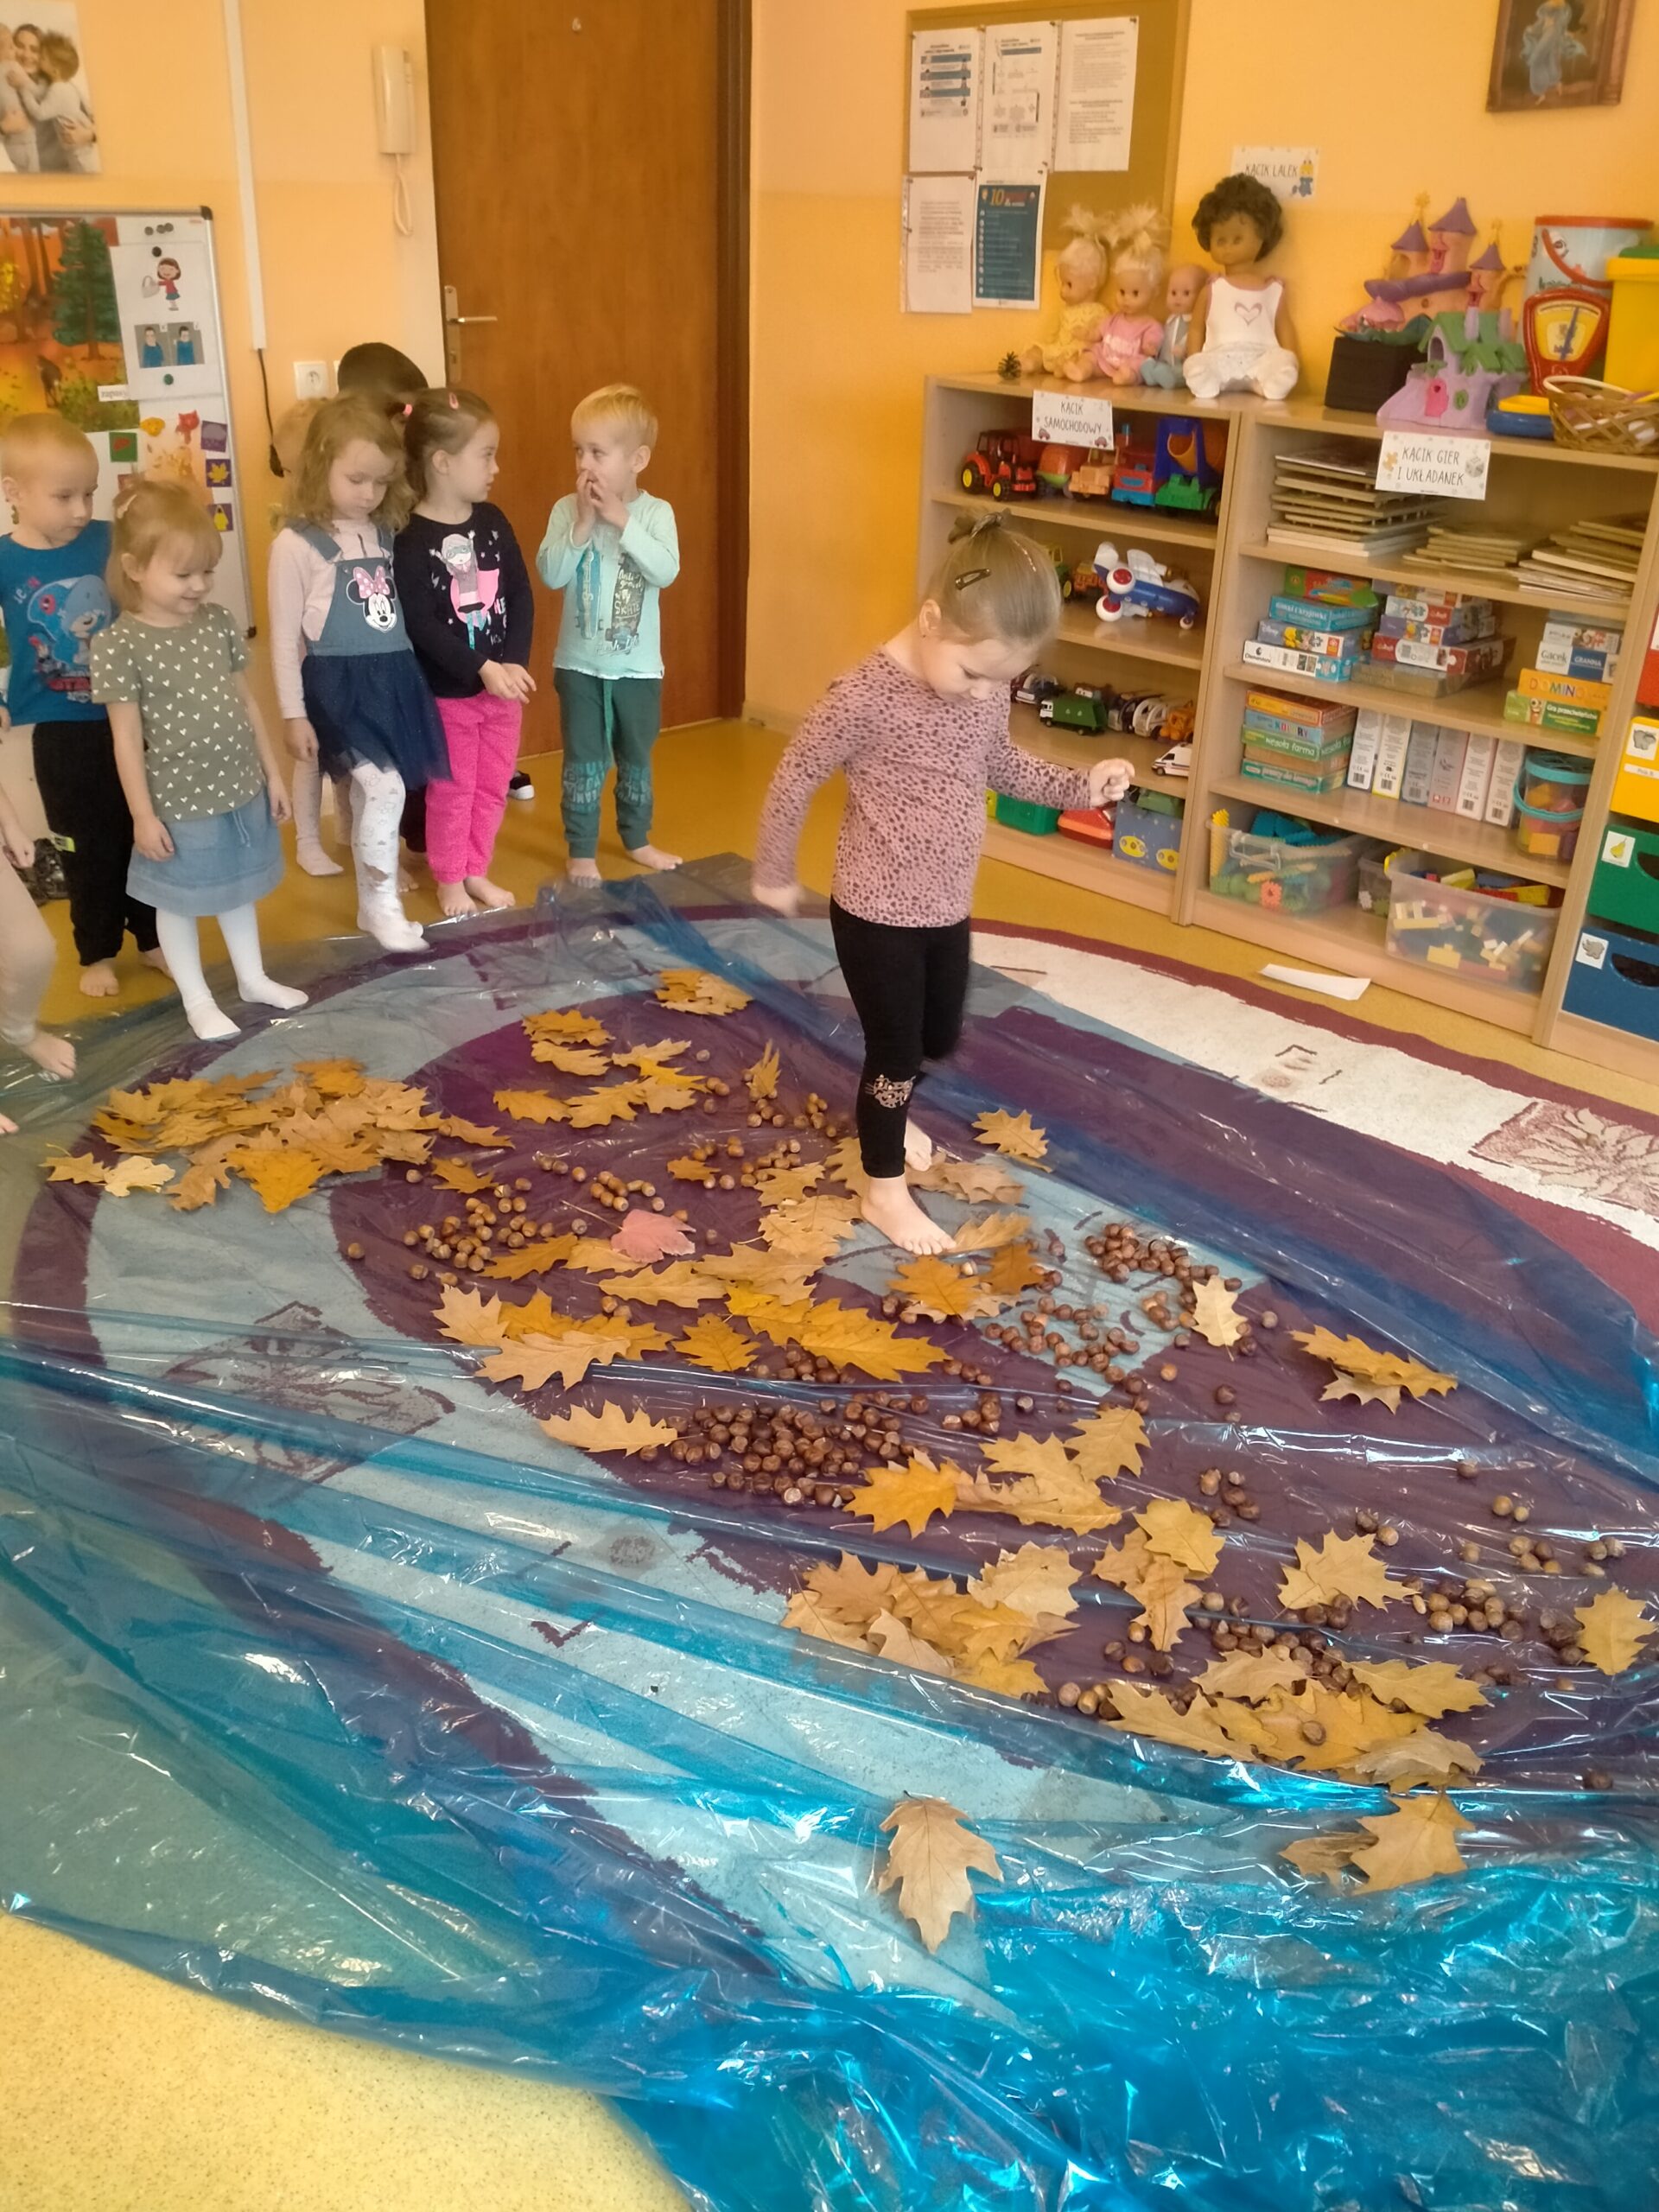 grupa dzieci boso chodzi po dywanie z żółędzi i liści